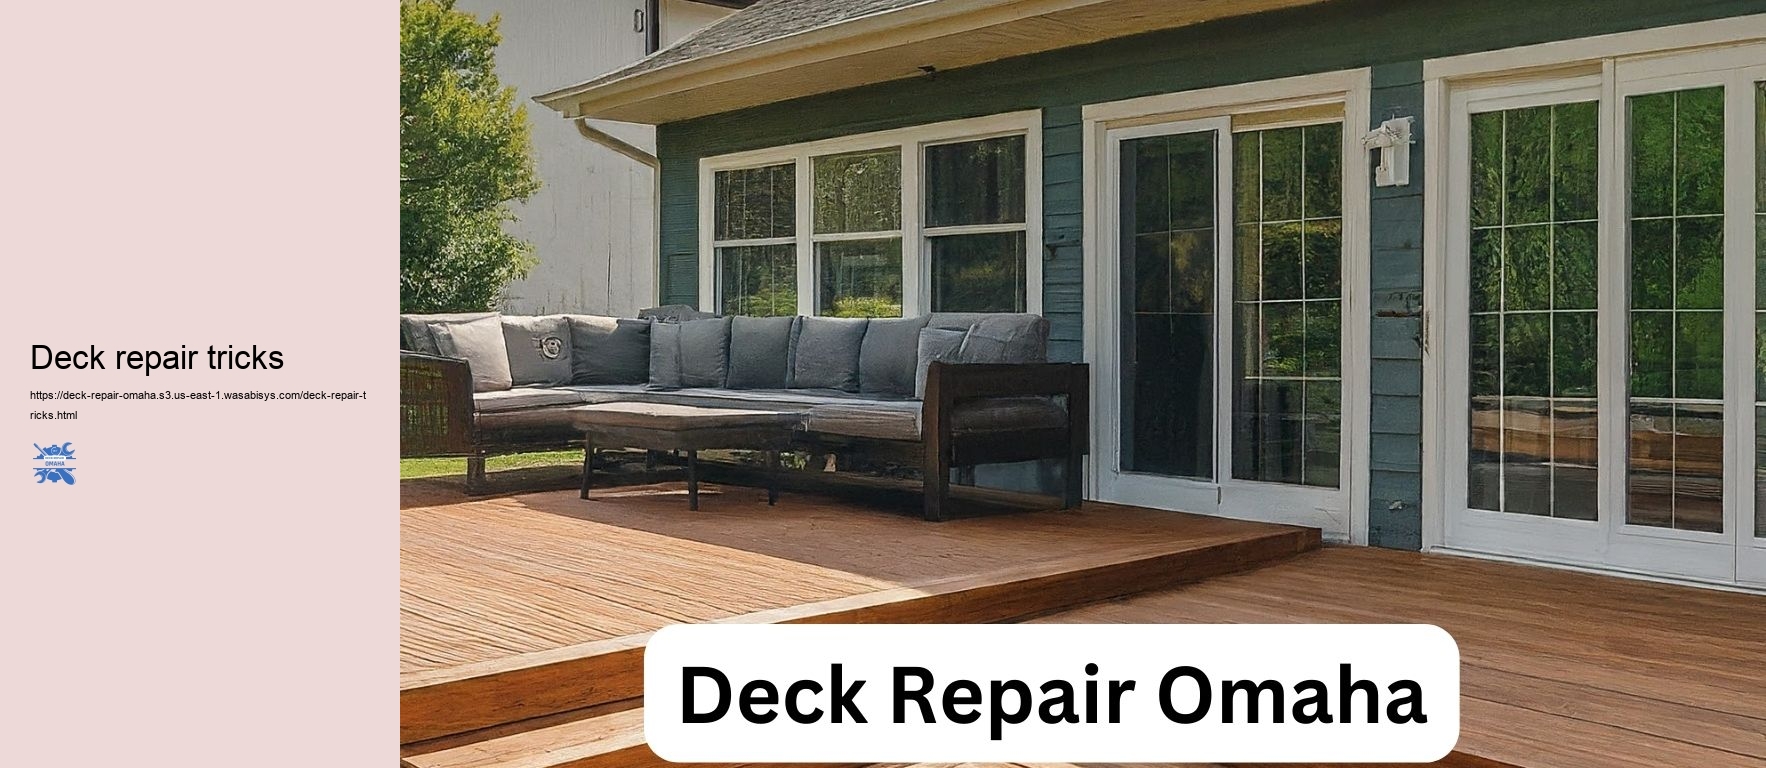 Deck repair tricks